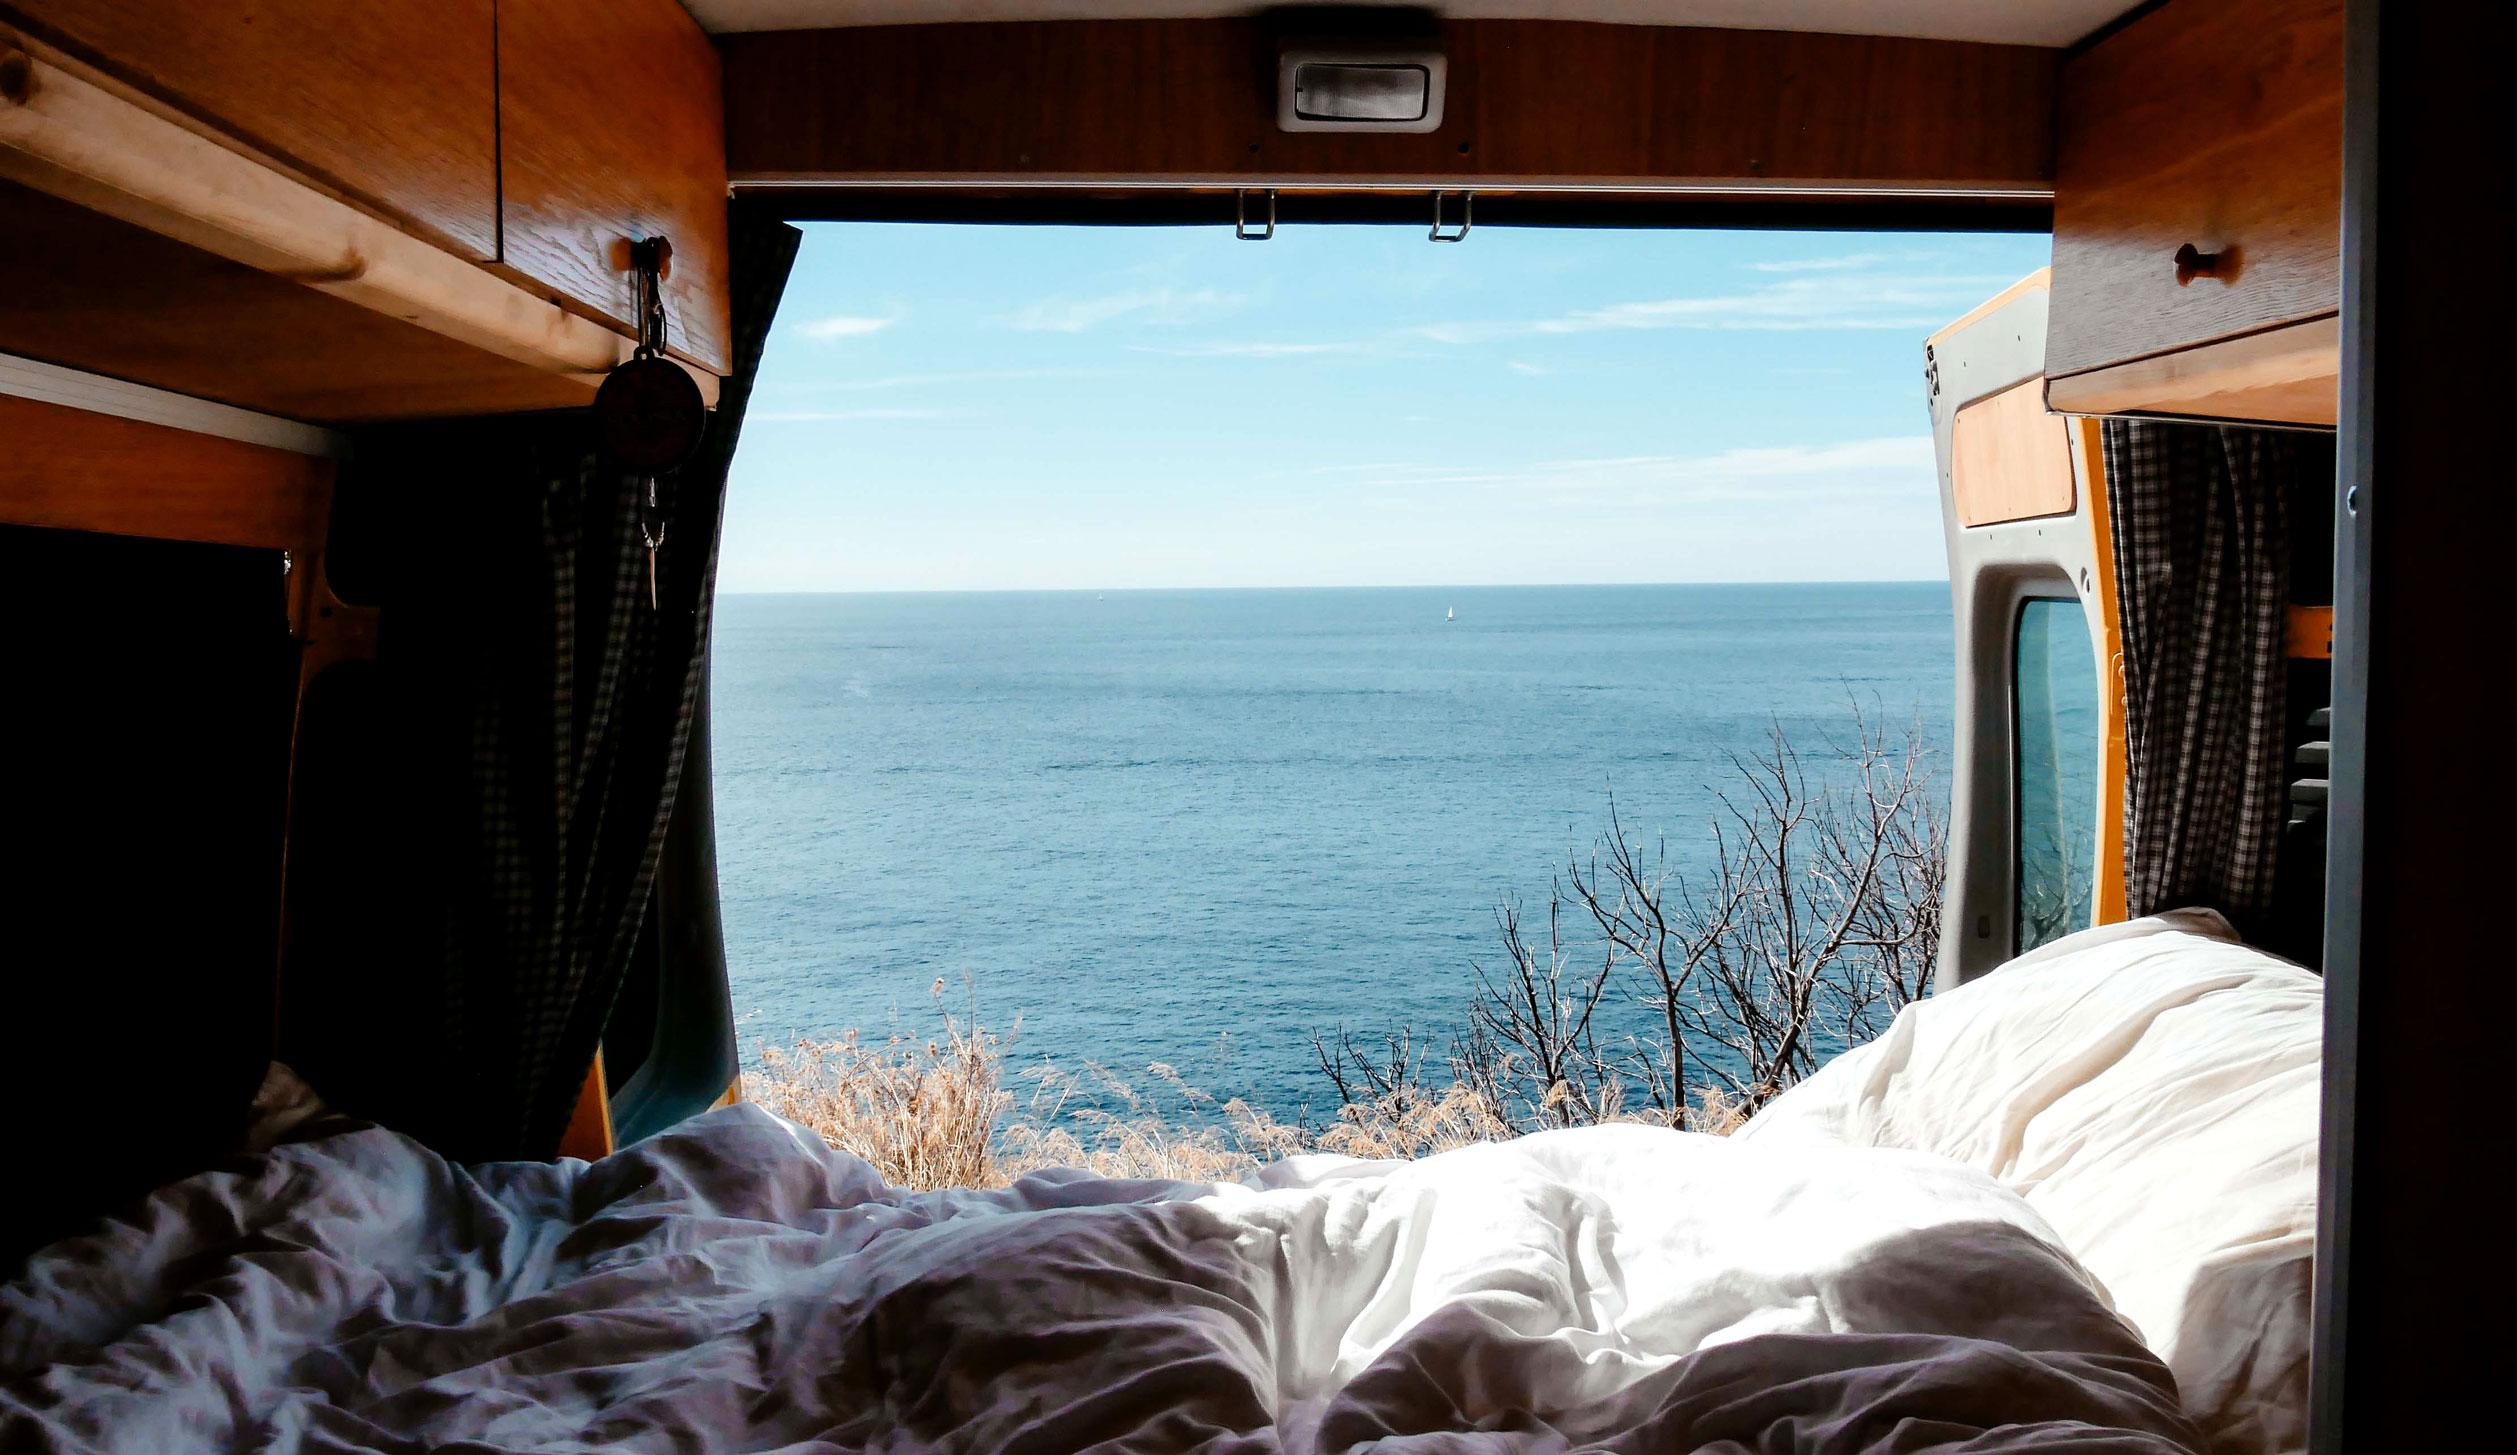  En France, il existe d'innombrables beaux campings avec vue directe sur la mer.